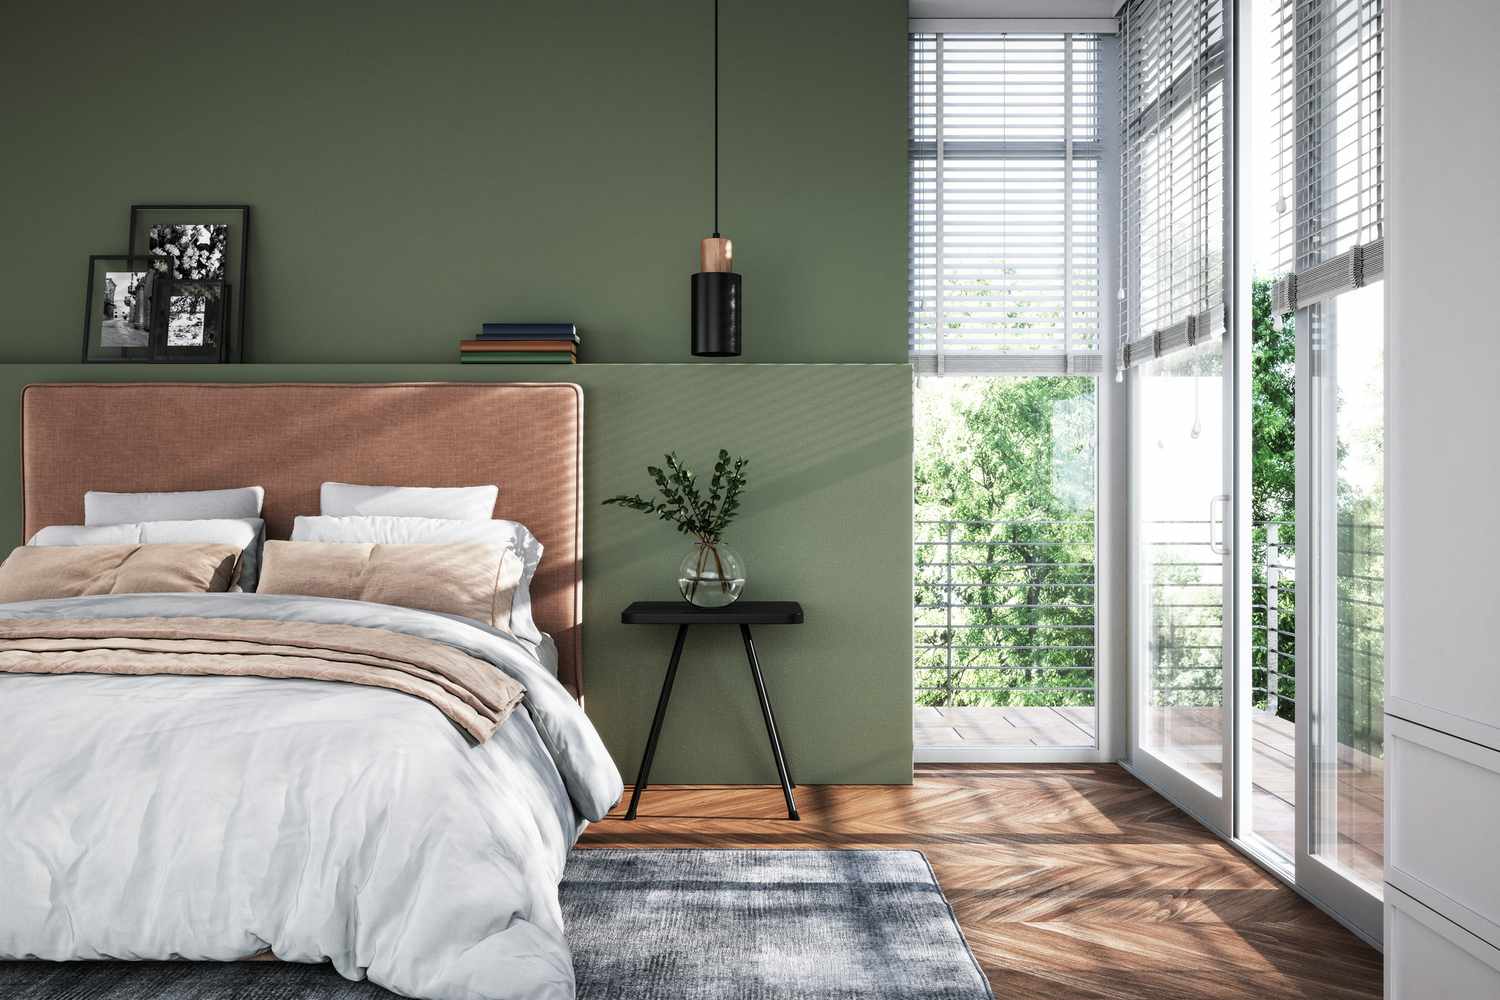 Modernes Schlafzimmer mit grünen Wänden und braunen Akzenten, natürliches Licht